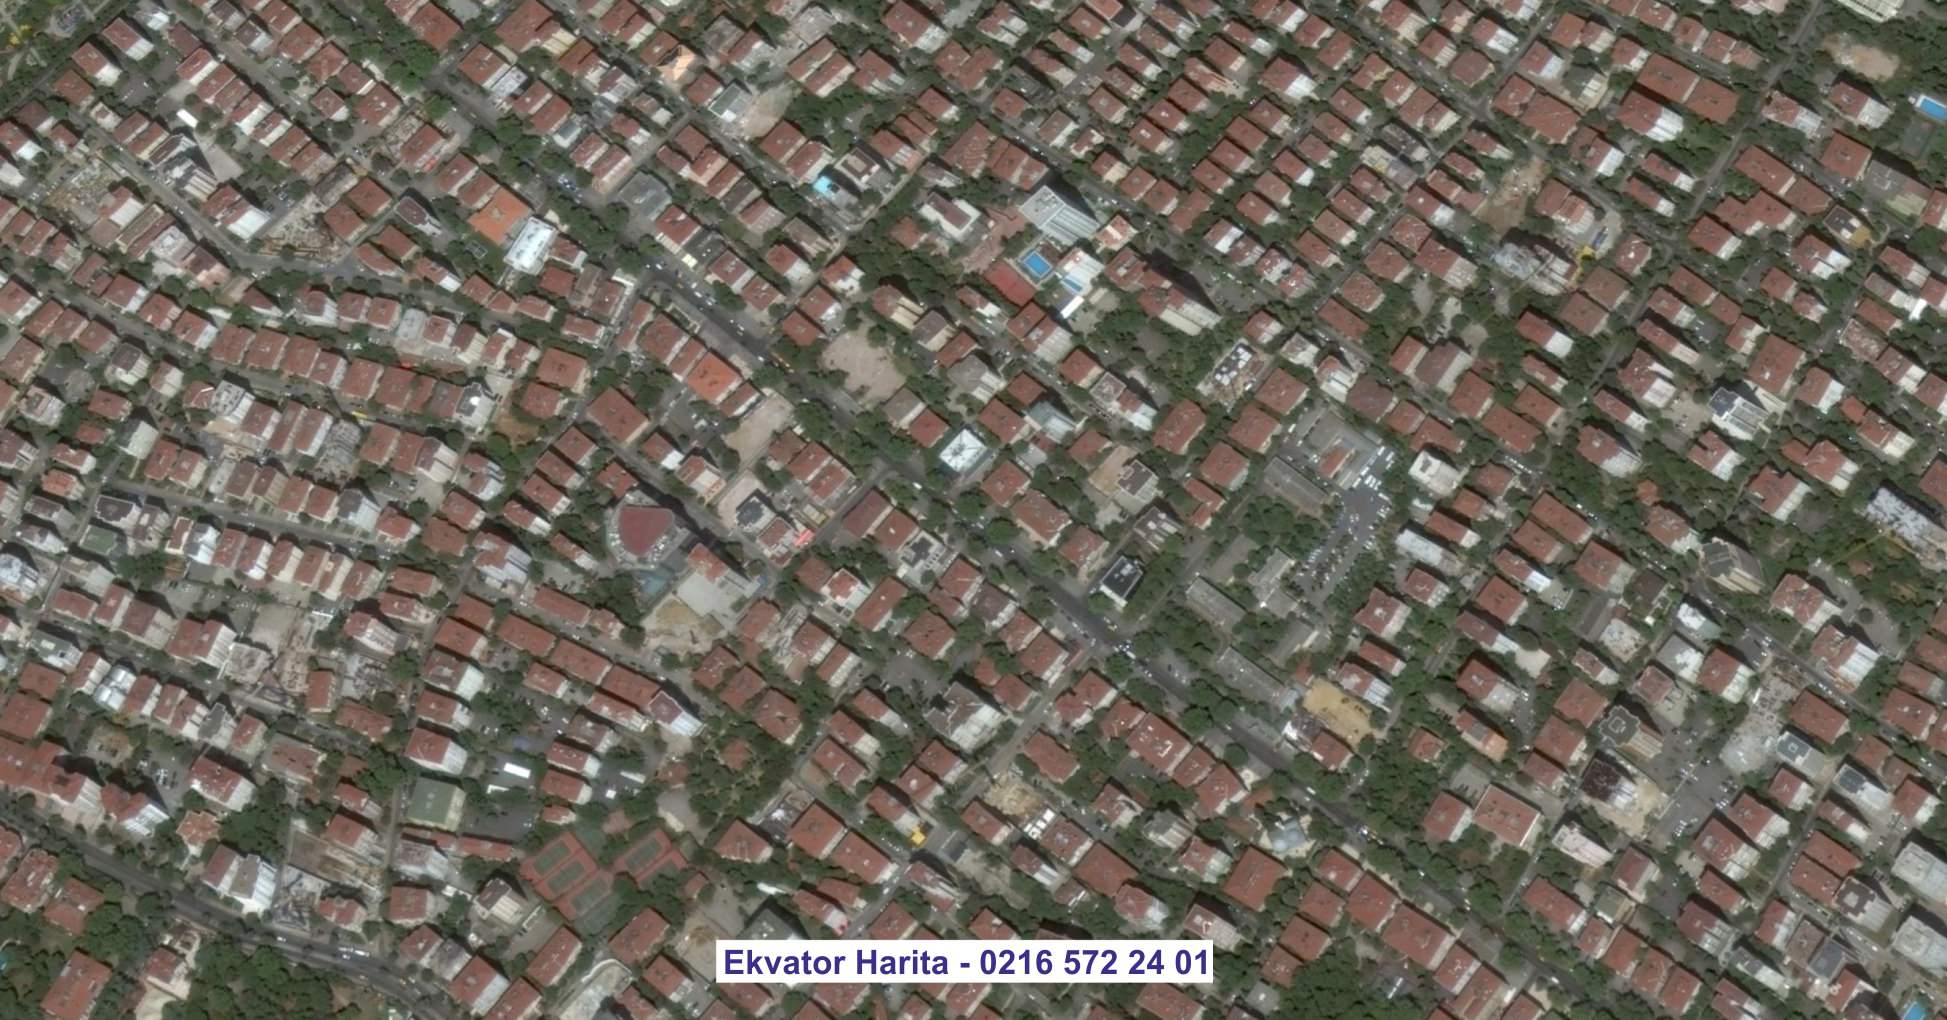 Kudüs Uydu Görüntüsü Örnek Fotoğrafı